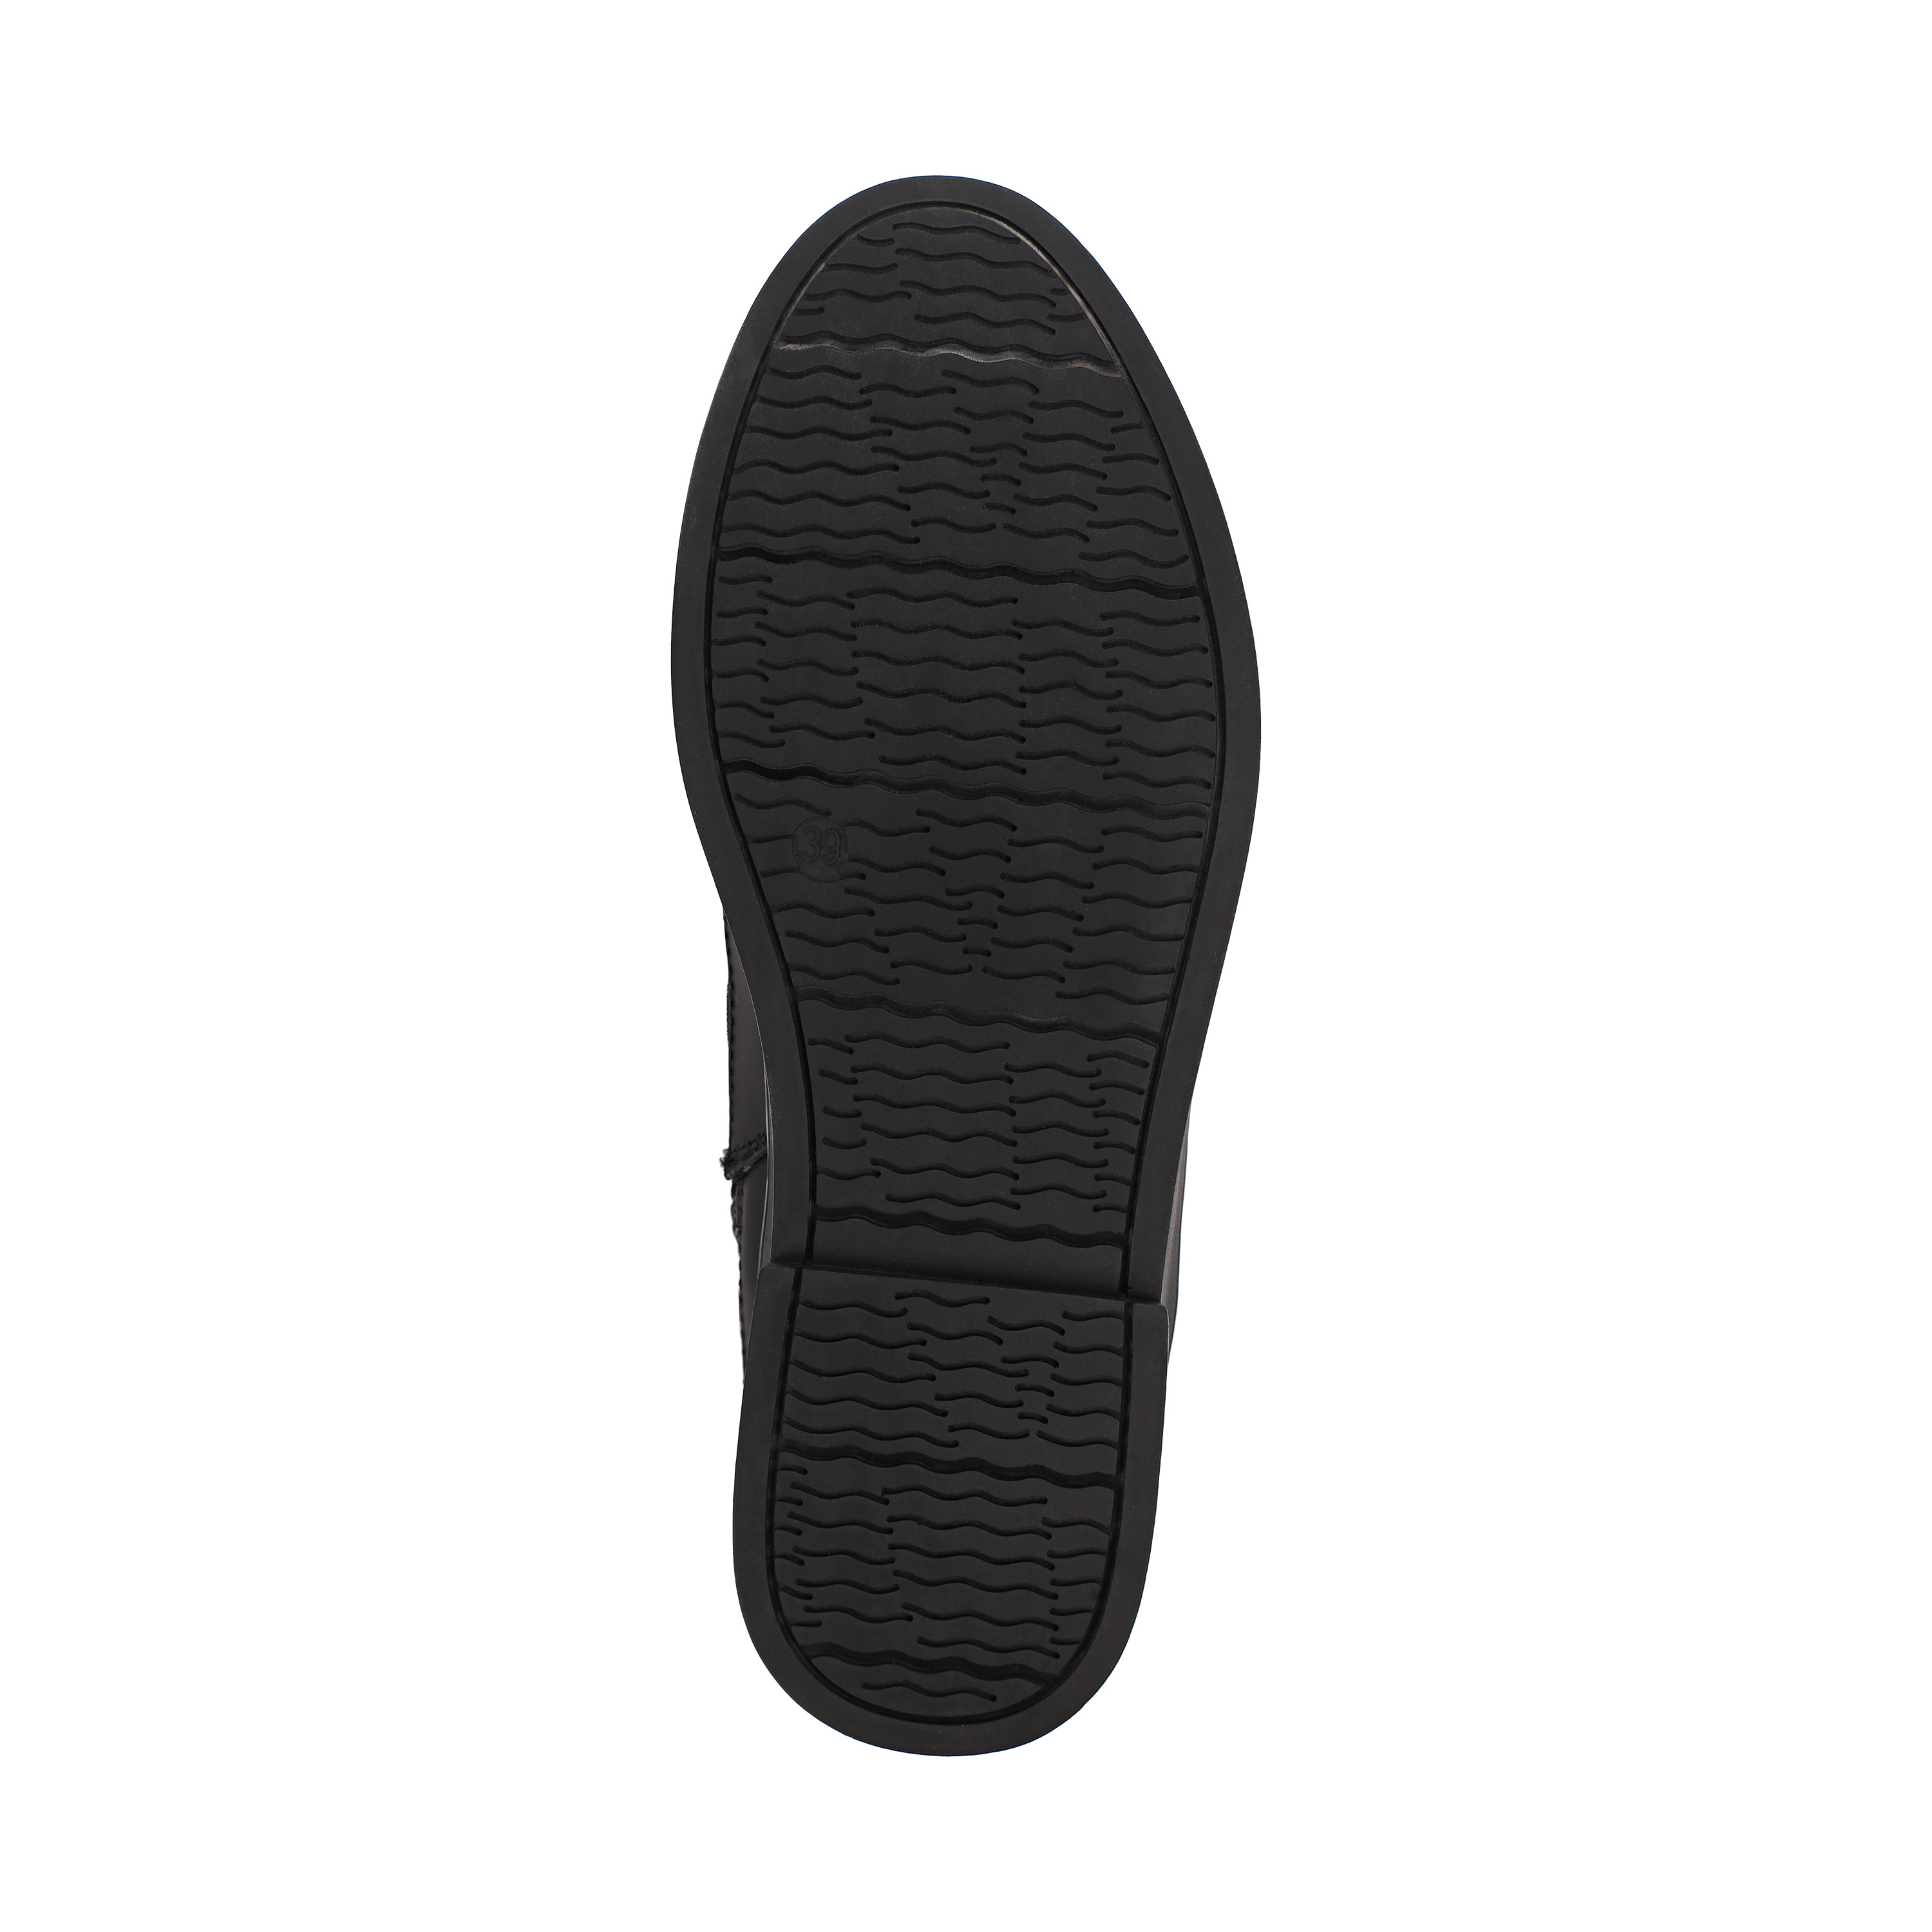 Ботинки Thomas Munz 233-584A-30202 233-584A-30202, цвет черный, размер 38 ботинки актив - фото 4